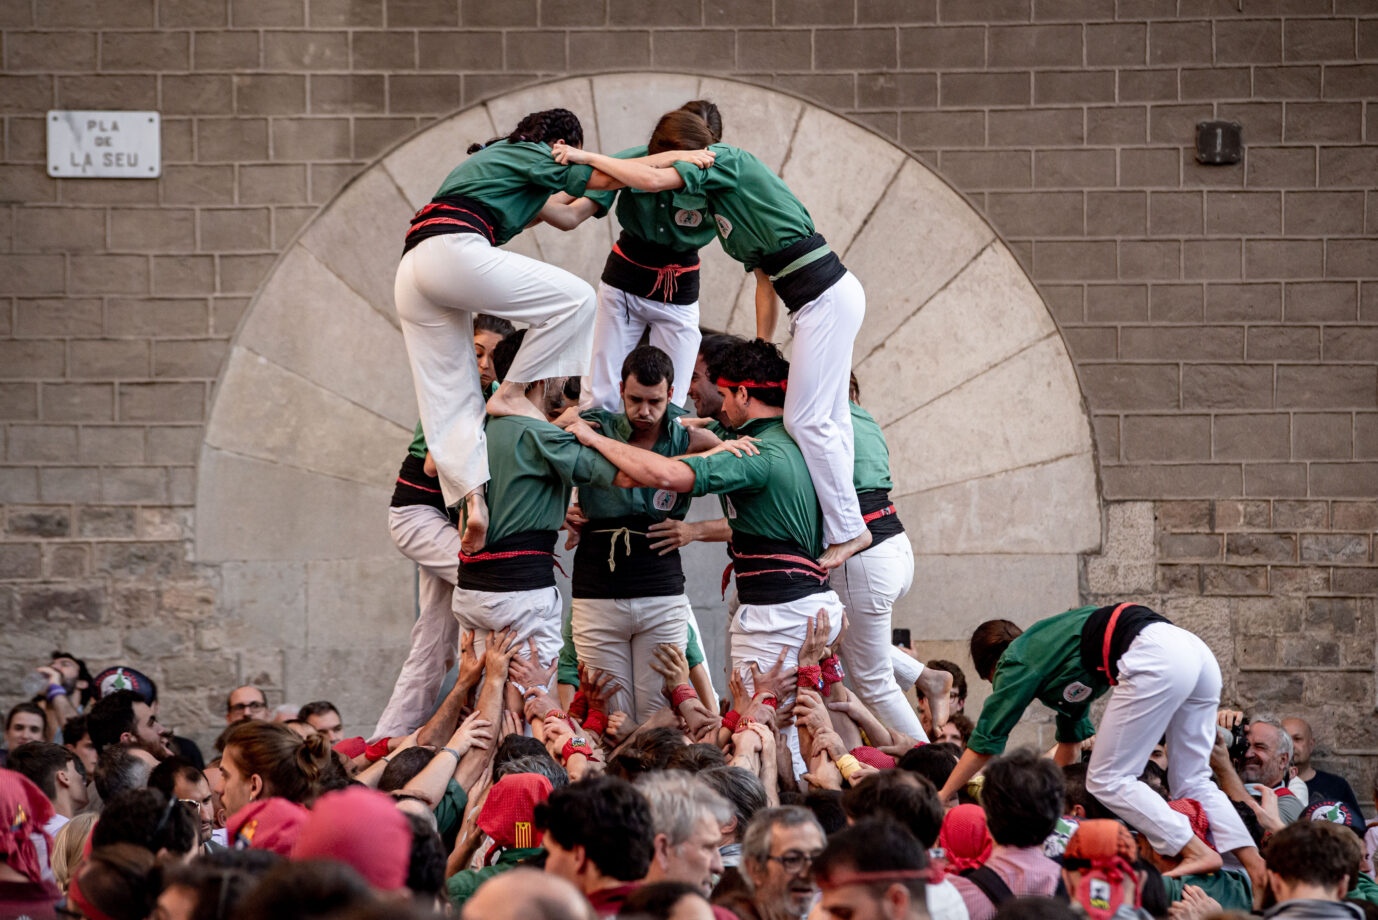 Spanien, Katalonien und die Sezessionsbewegung: Die Menschentürme „Castells“ sind altes katalanisches Kulturgut: Sinnbild eines auf ziemlich wackeligen Füßen stehenden Staates